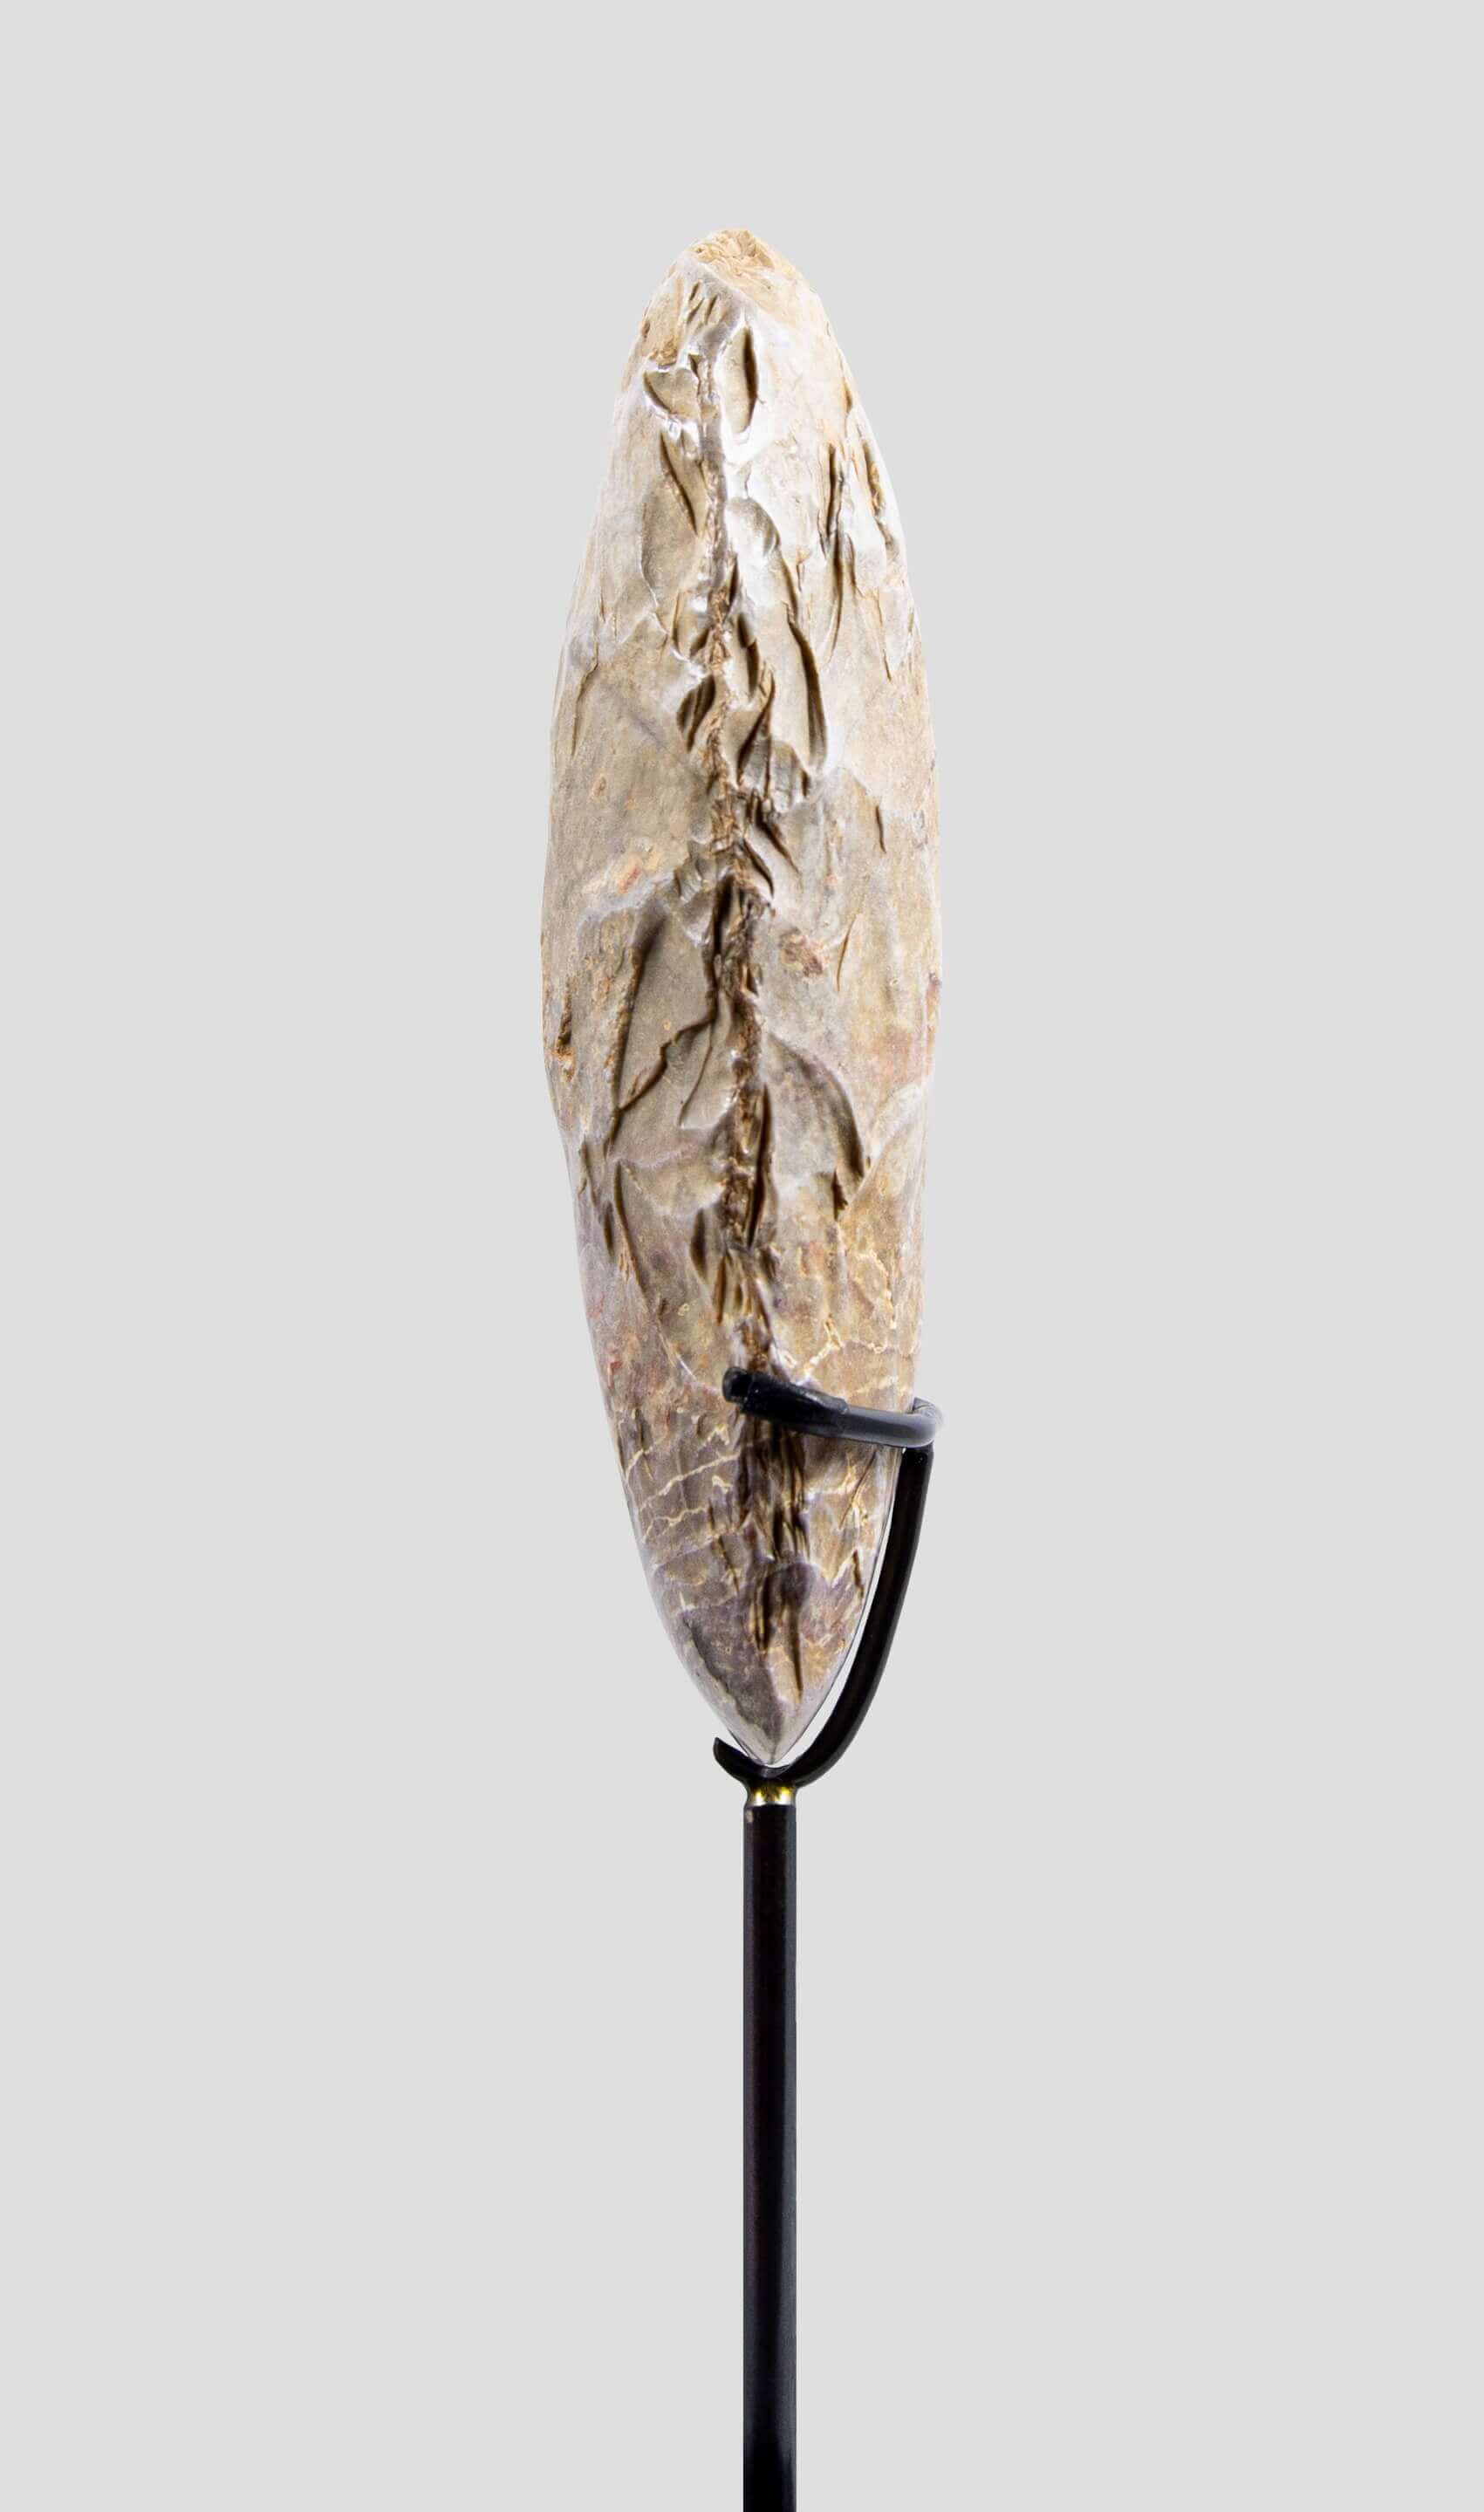 アーティファクト 新石器時代 カプシアン 手斧 [紀元前 8,500 年] 136mm